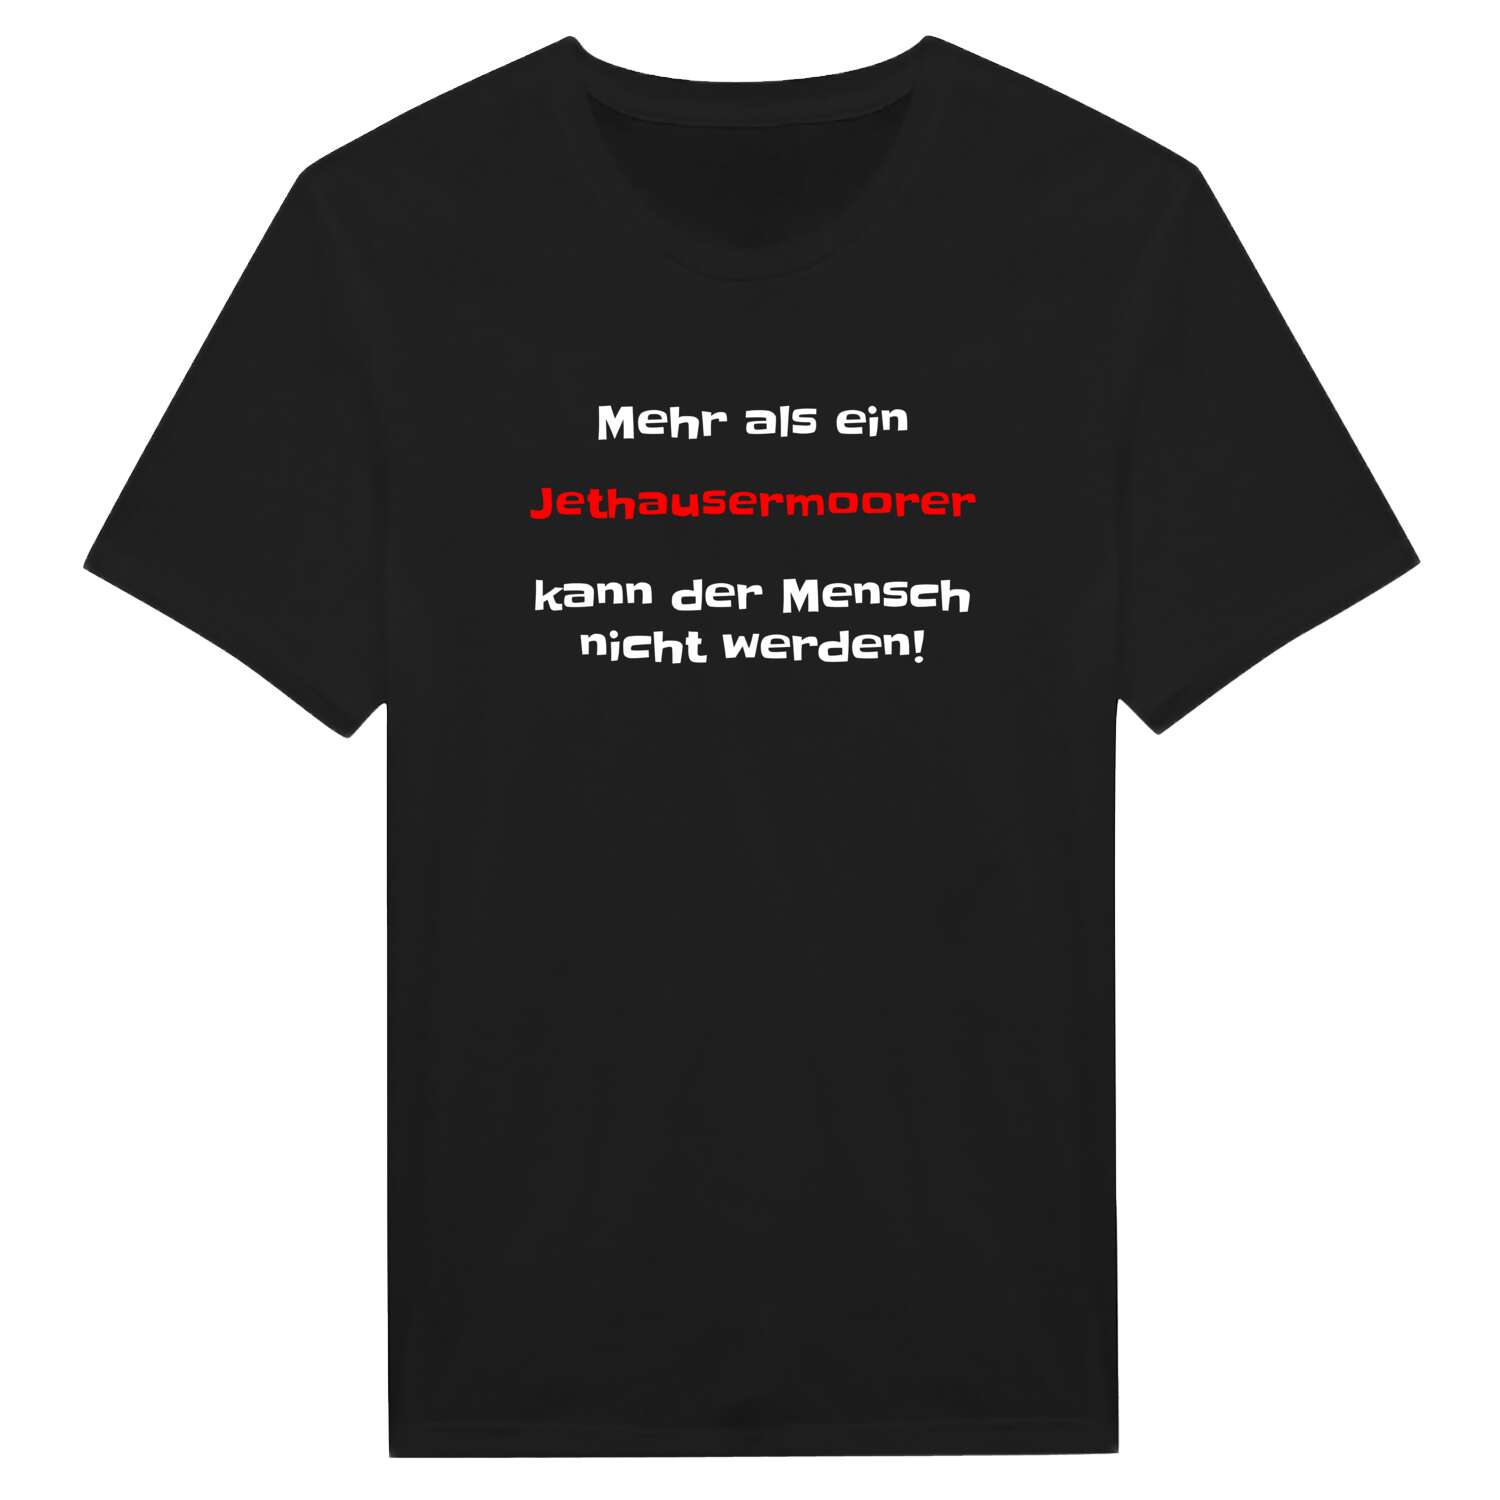 Jethausermoor T-Shirt »Mehr als ein«